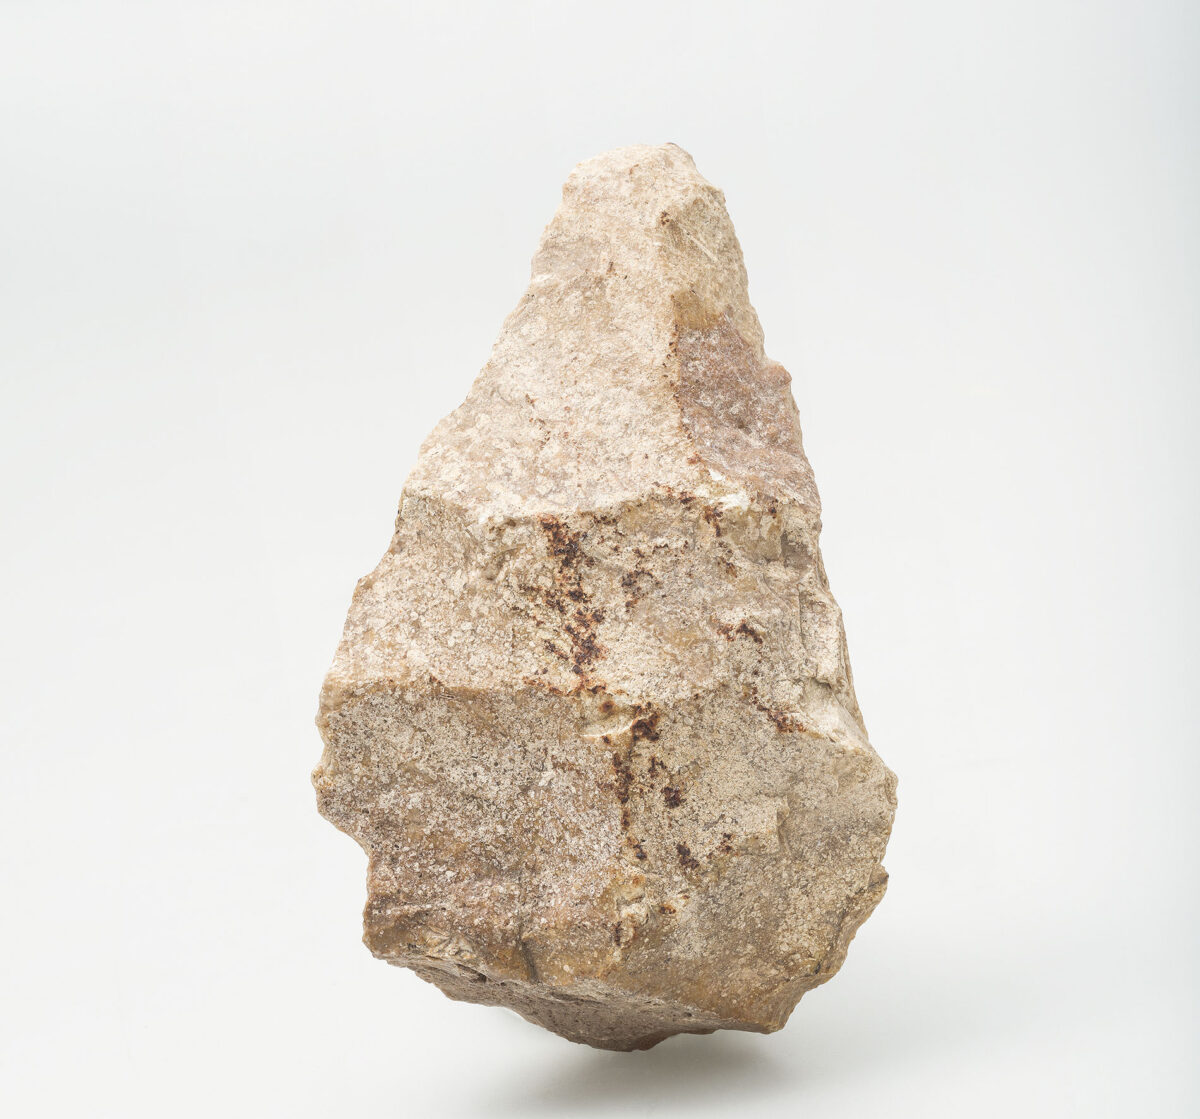 Χειροπέλεκυς σε φολίδα, Ροδαφνίδια, Λέσβος, ελάχιστη ηλικία 300.000-200.000 χρόνια. Πυριτόλιθος θερμών πηγών. Ανασκαφή Πανεπιστημίου Κρήτης. © ΕΦΑ Λέσβου, Αρχαιολογικό Μουσείο Μυτιλήνης, αρ. εισ. ΠΛΘ58. Φωτ.: Βασίλης Τσώνης.